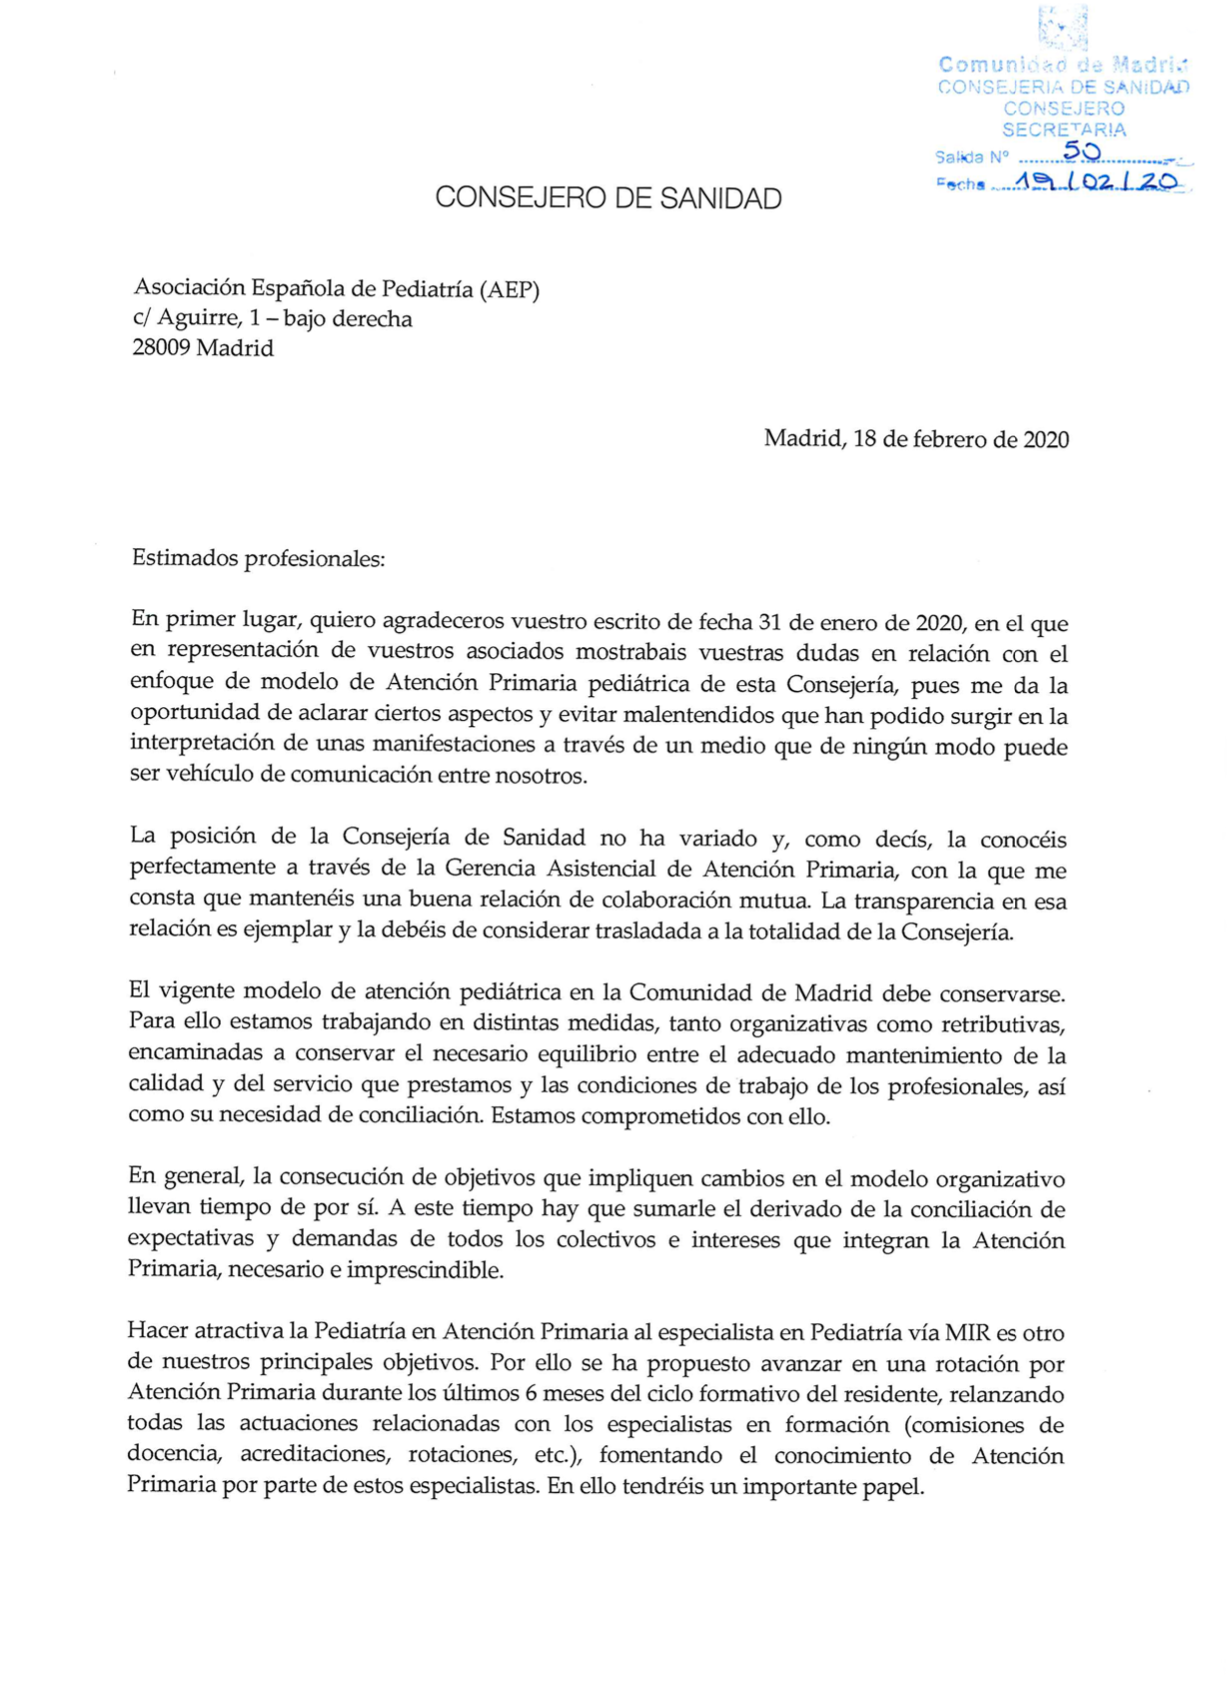 Respuesta de la Consejería de Sanidad de la Comunidad de Madrid a la carta  de apoyo de la AEP al modelo de Atención Primaria | Asociación Española de  Pediatría